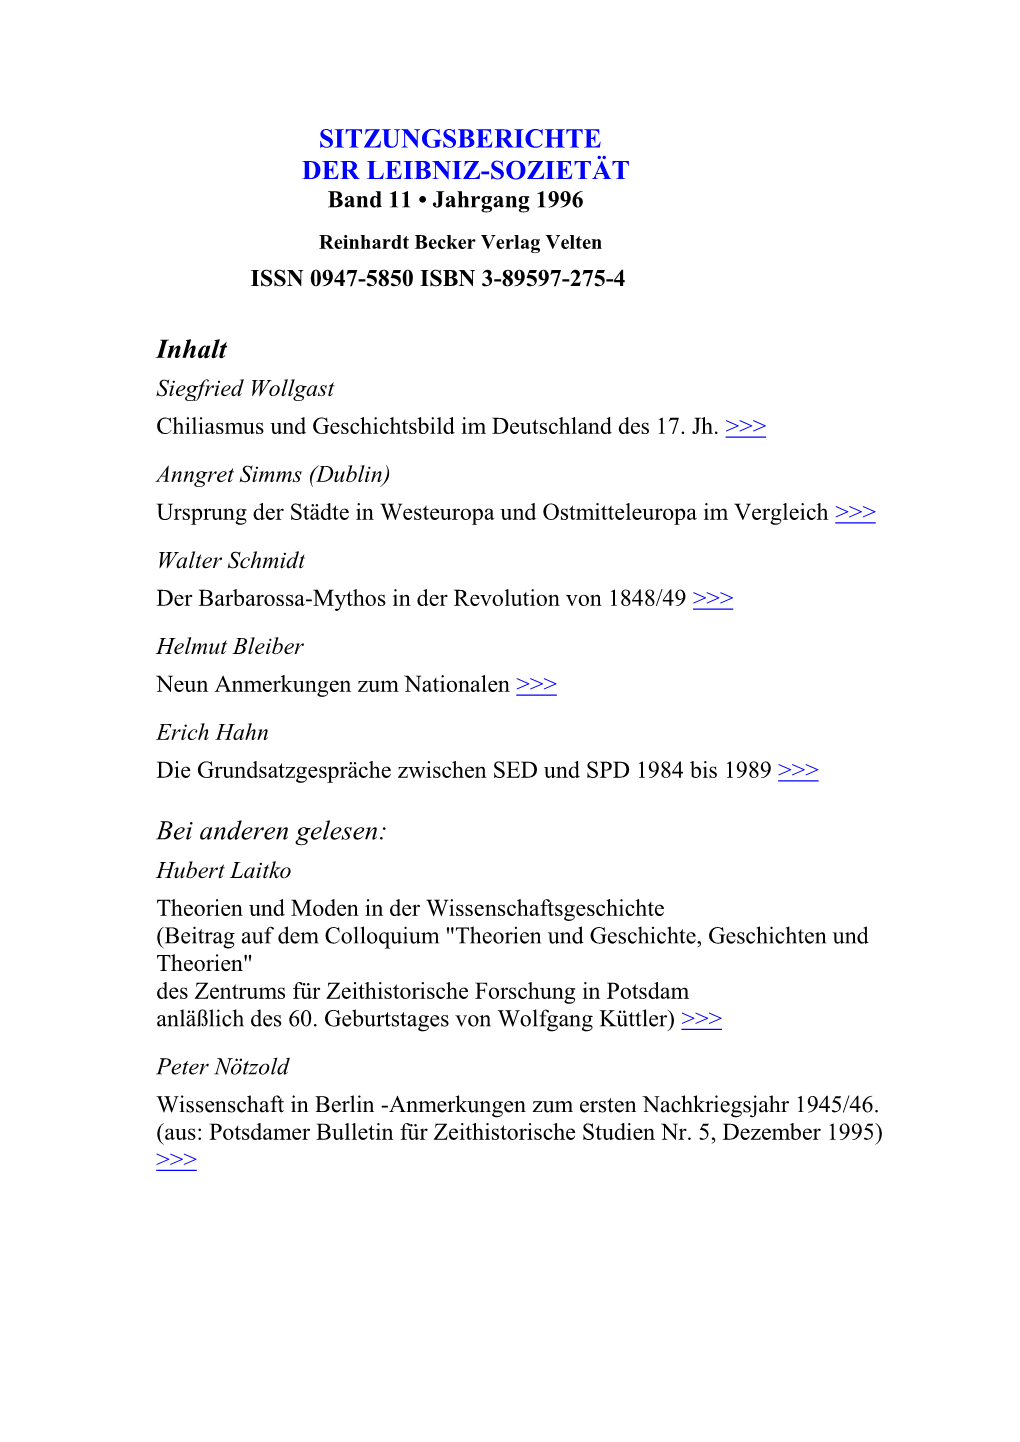 Sitzungsberichte Der Leibniz-Sozietät, Jahrgang 1996, Band 11